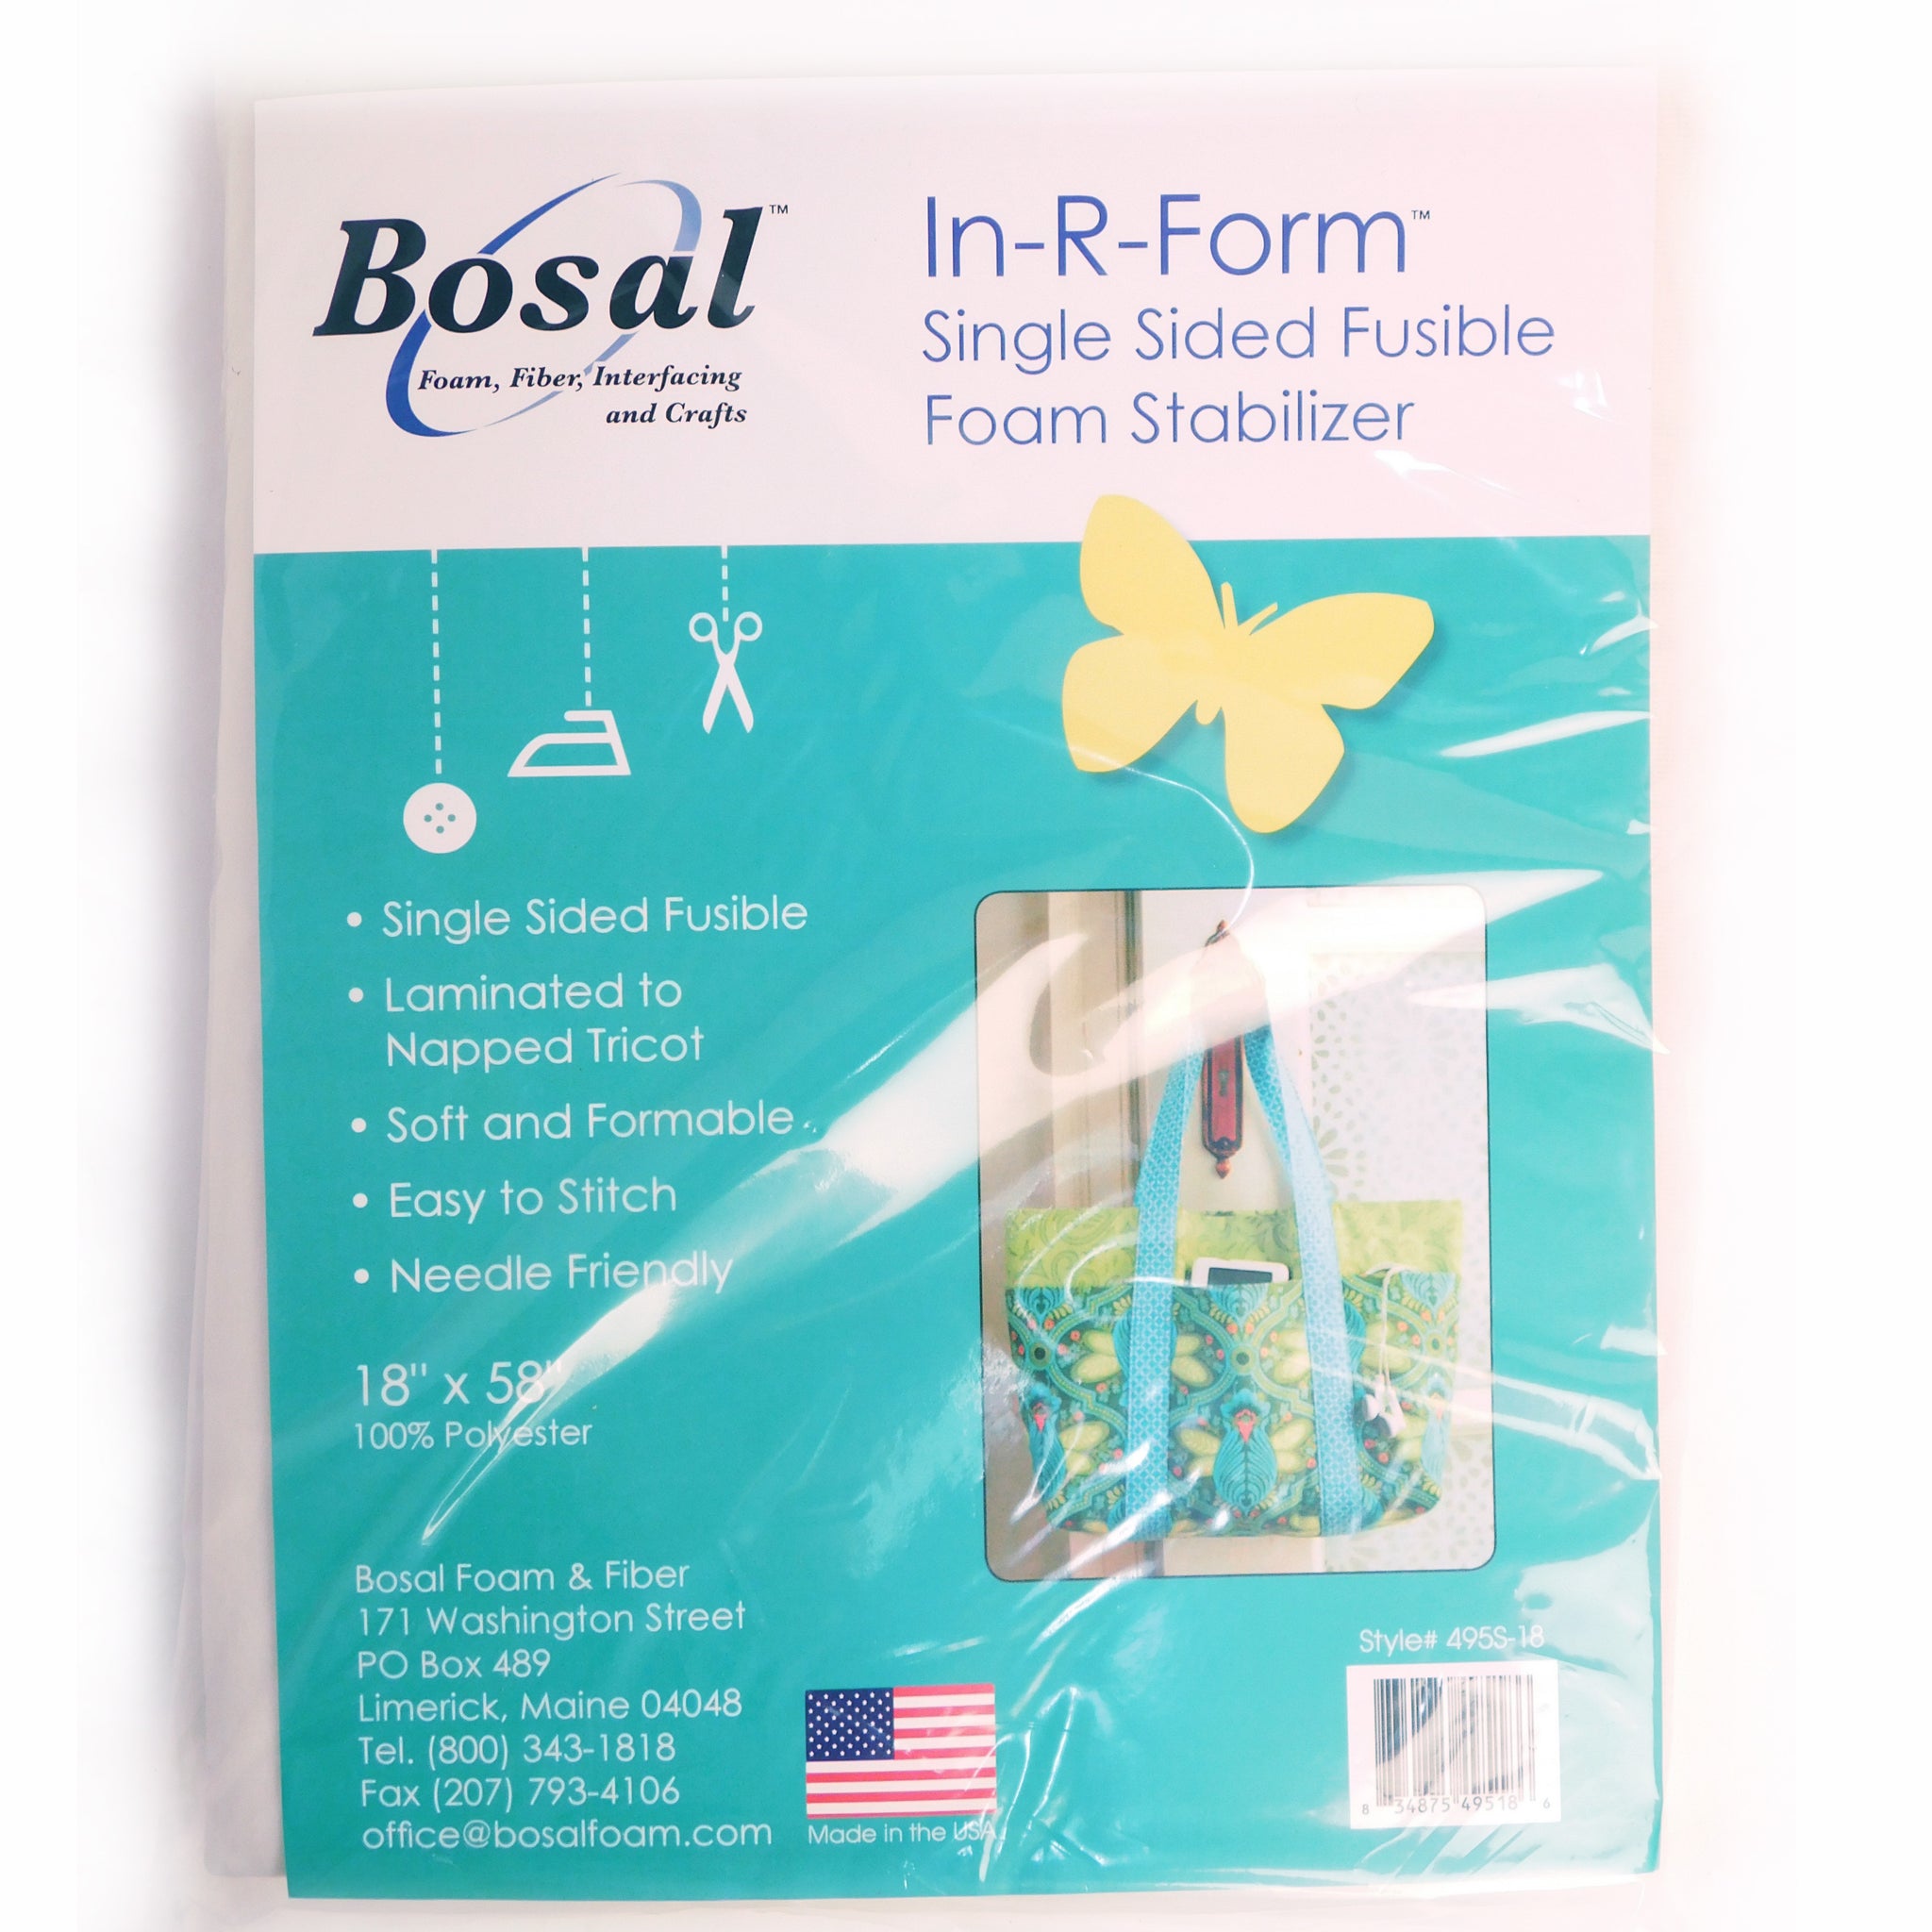 Bosal In-R-Form Single Sided Fusible Foam Stabilizer, 18" x 58"